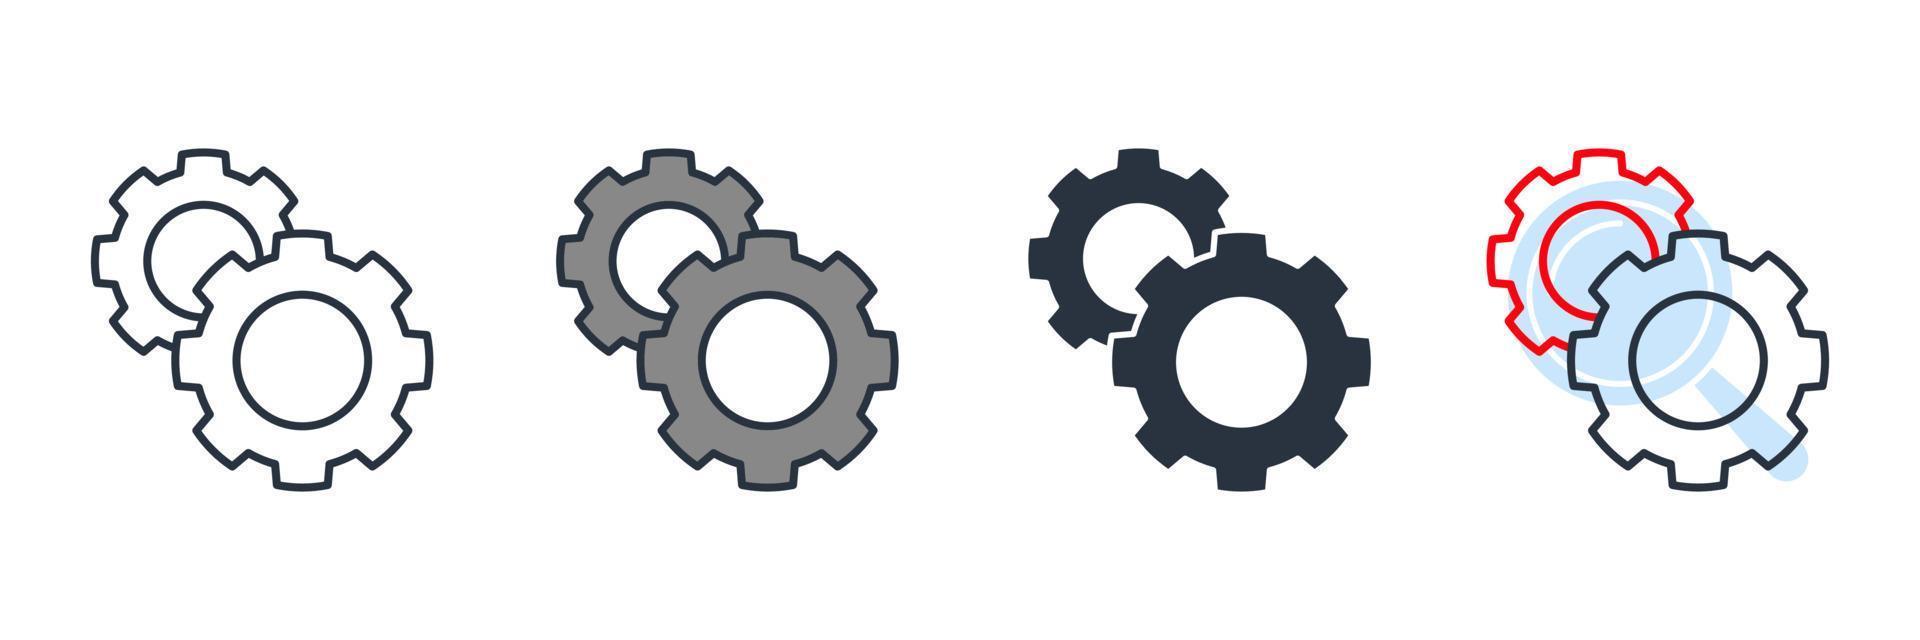 Ilustración de vector de logotipo de icono de procesamiento. rueda dentada y plantilla de símbolo de proceso para la colección de diseño gráfico y web